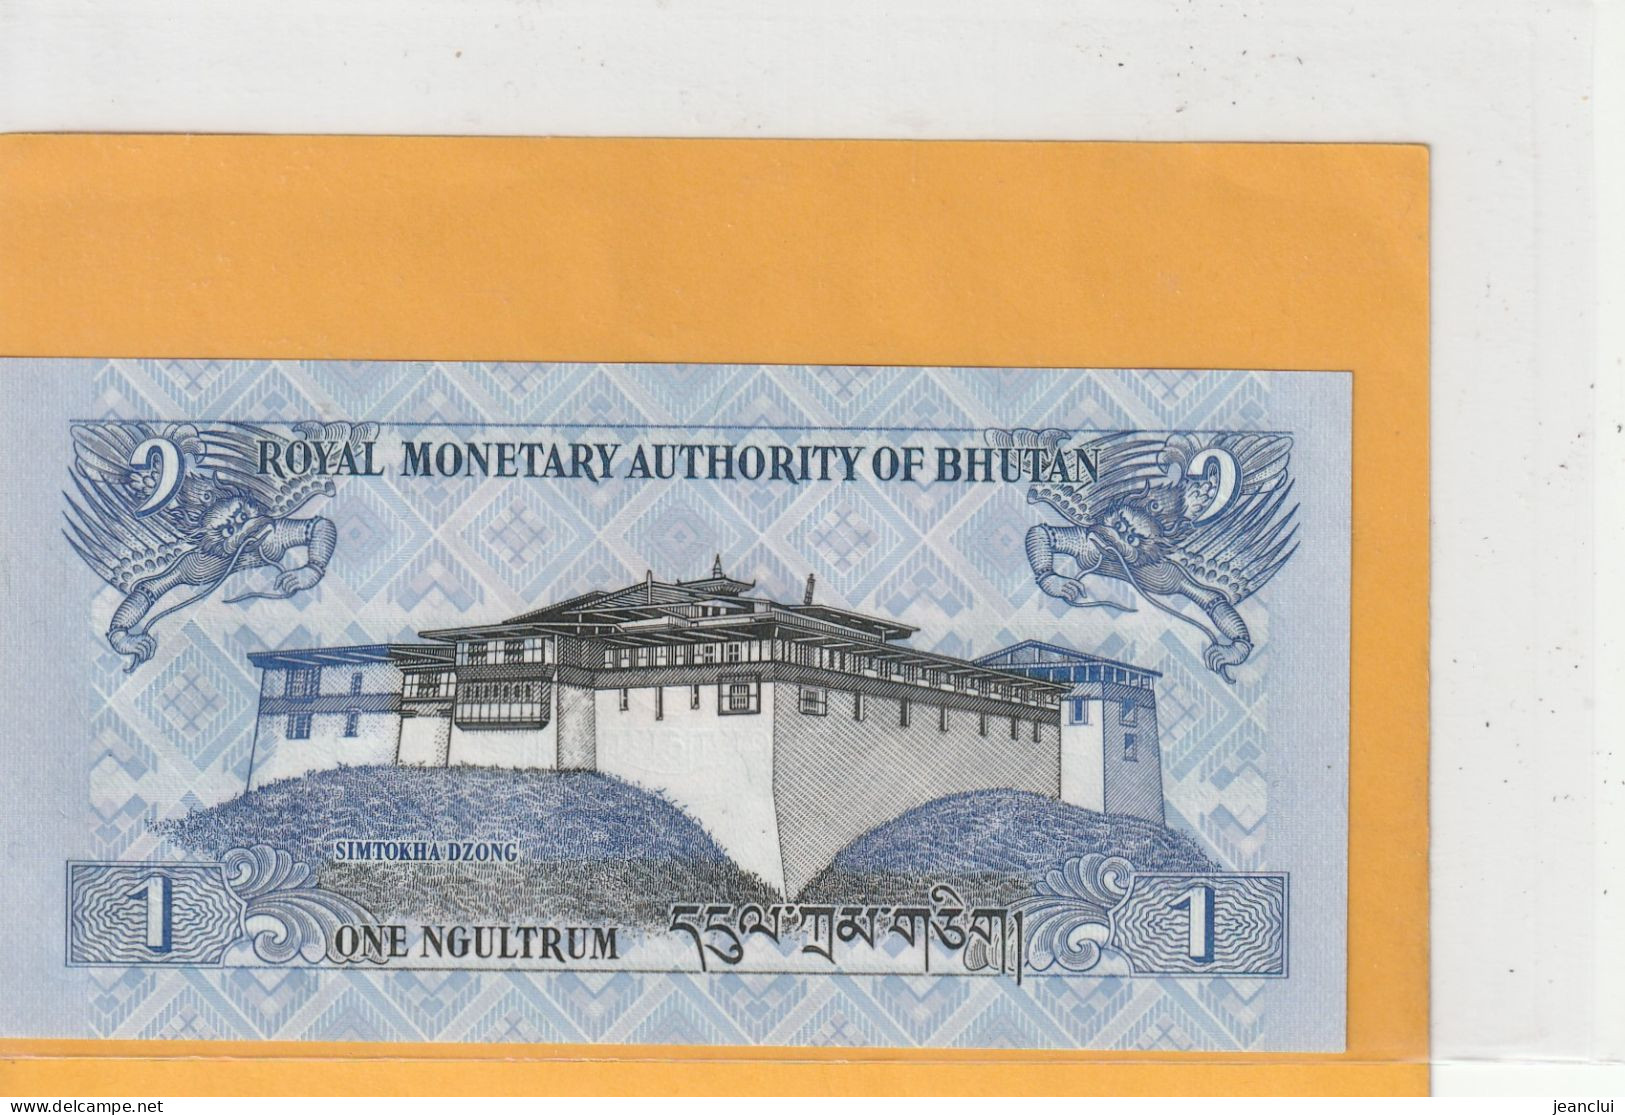 ROYAL MONETARY AUTHORITY OF BHUTAN .  1 NGULTRUM  . 2013   . N°  I 11659662  .  2 SCANNES  .  BILLET ETAT LUXE - Bhután